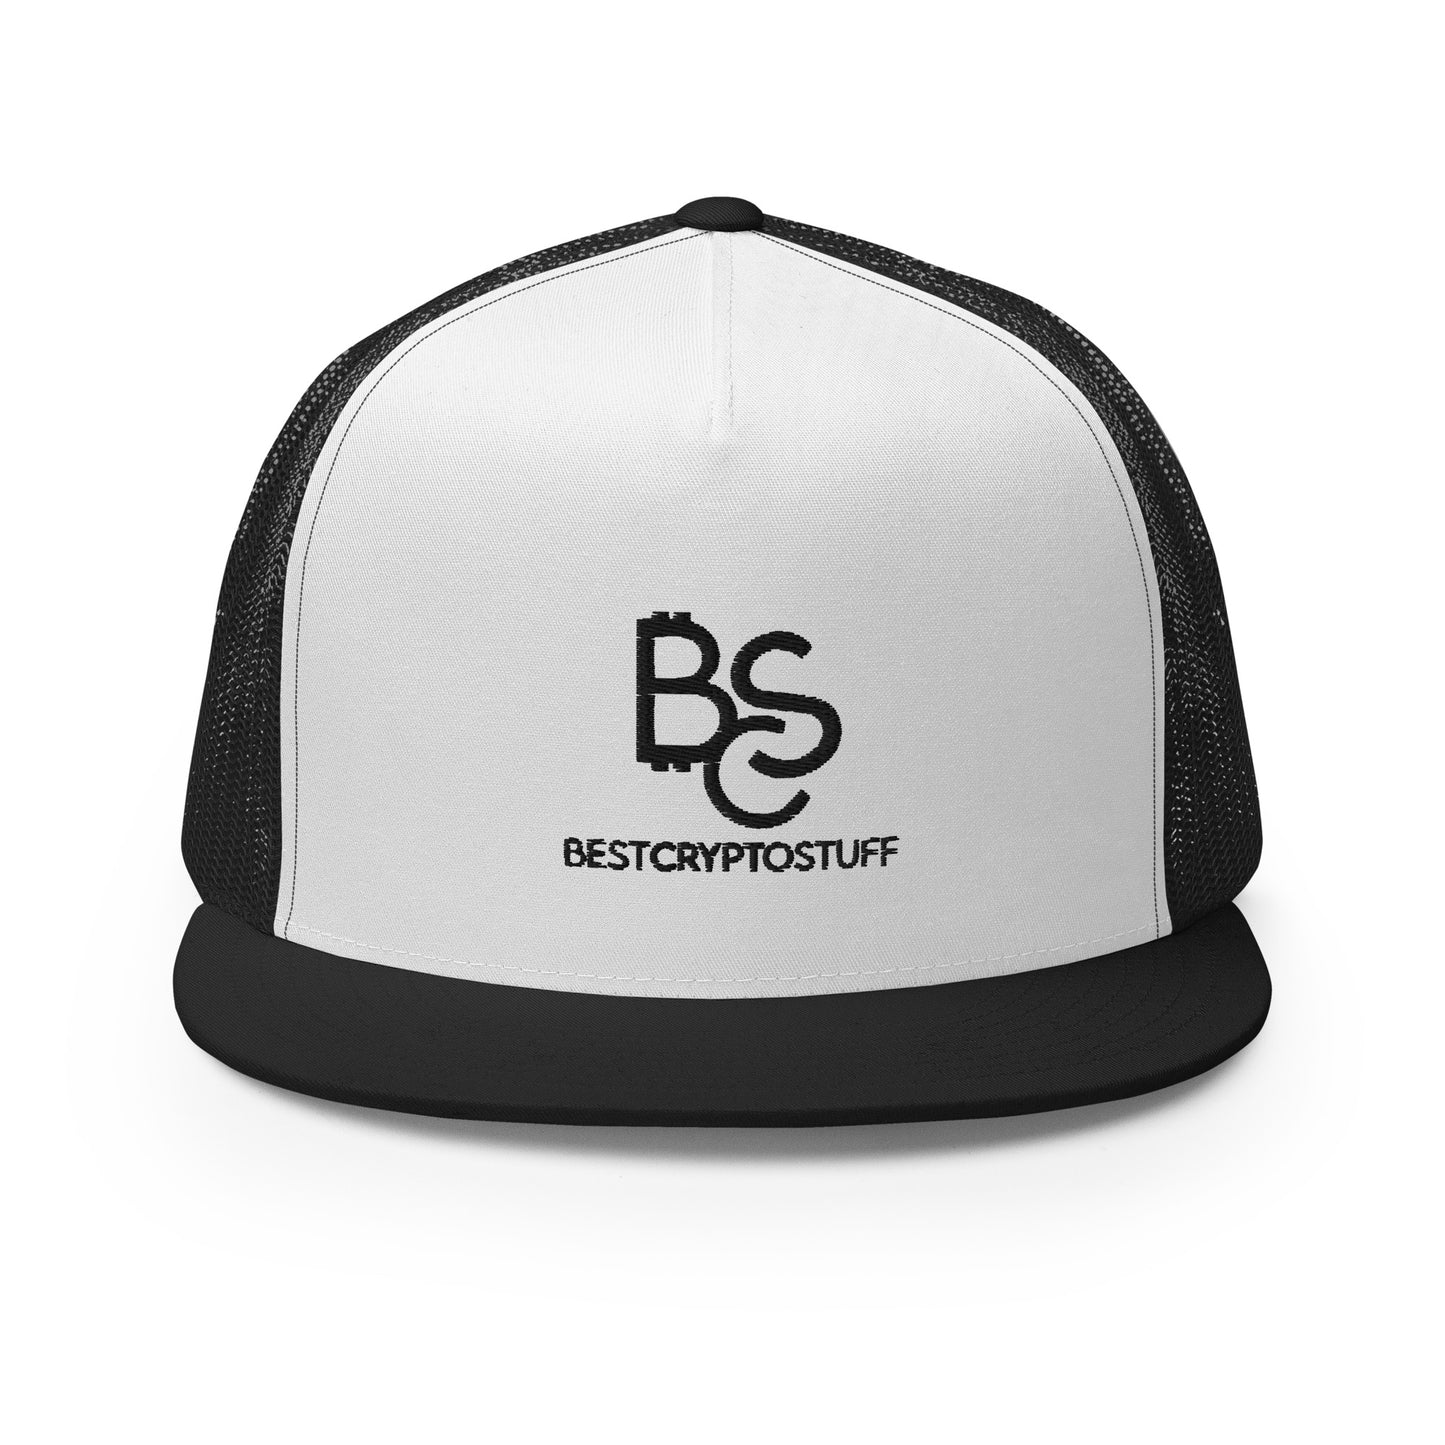 BCS BESTCRYPTOSTUFF Snapback Cap